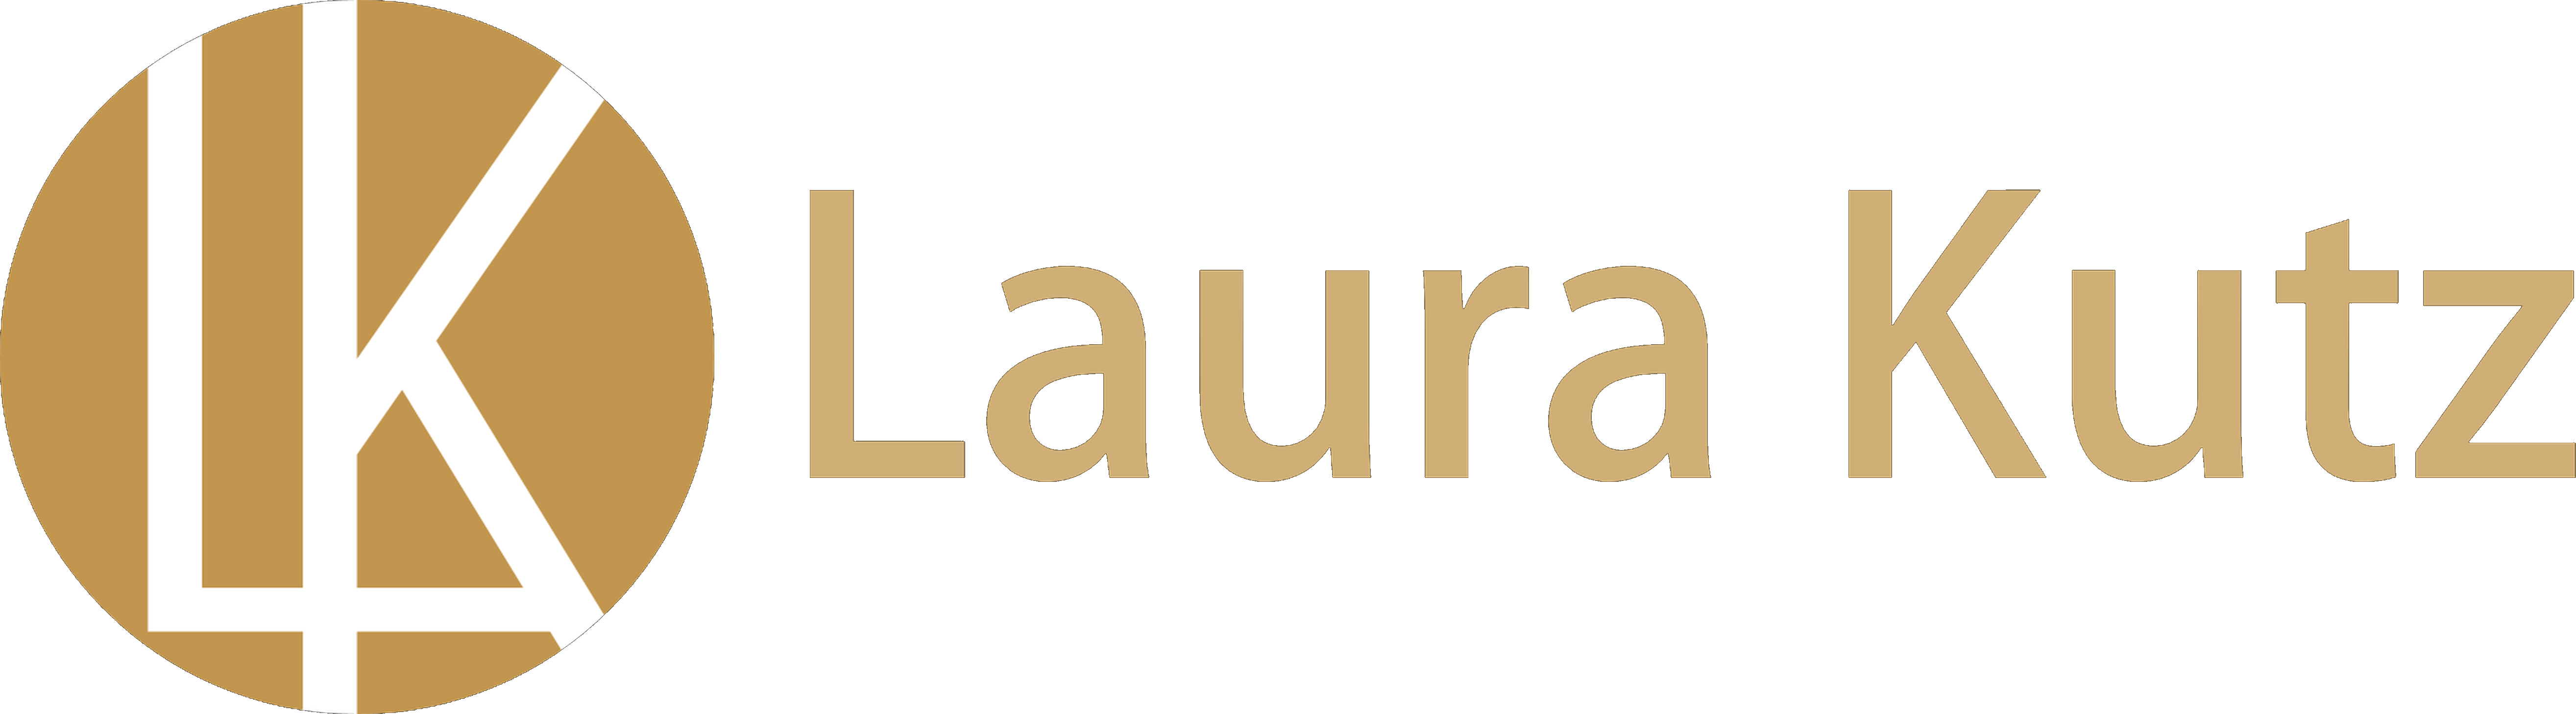 Laura Kutz